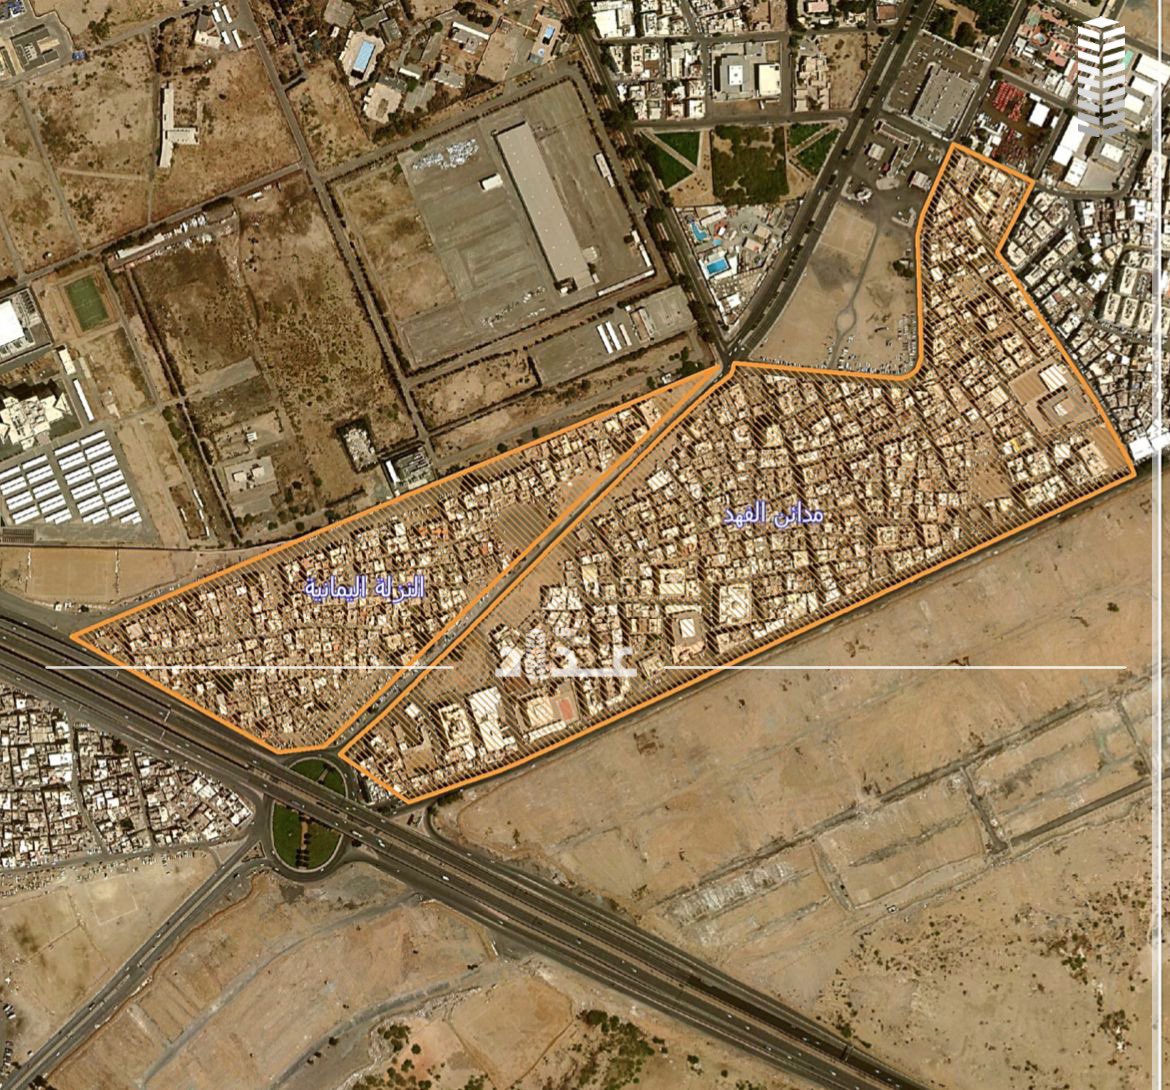 الأحياء العشوائية فى جدة ماهى خريطة الازالة الخاصة بالمناطق العشوائية فى مدينة جدة وهل من ضمنها حى الجامعة